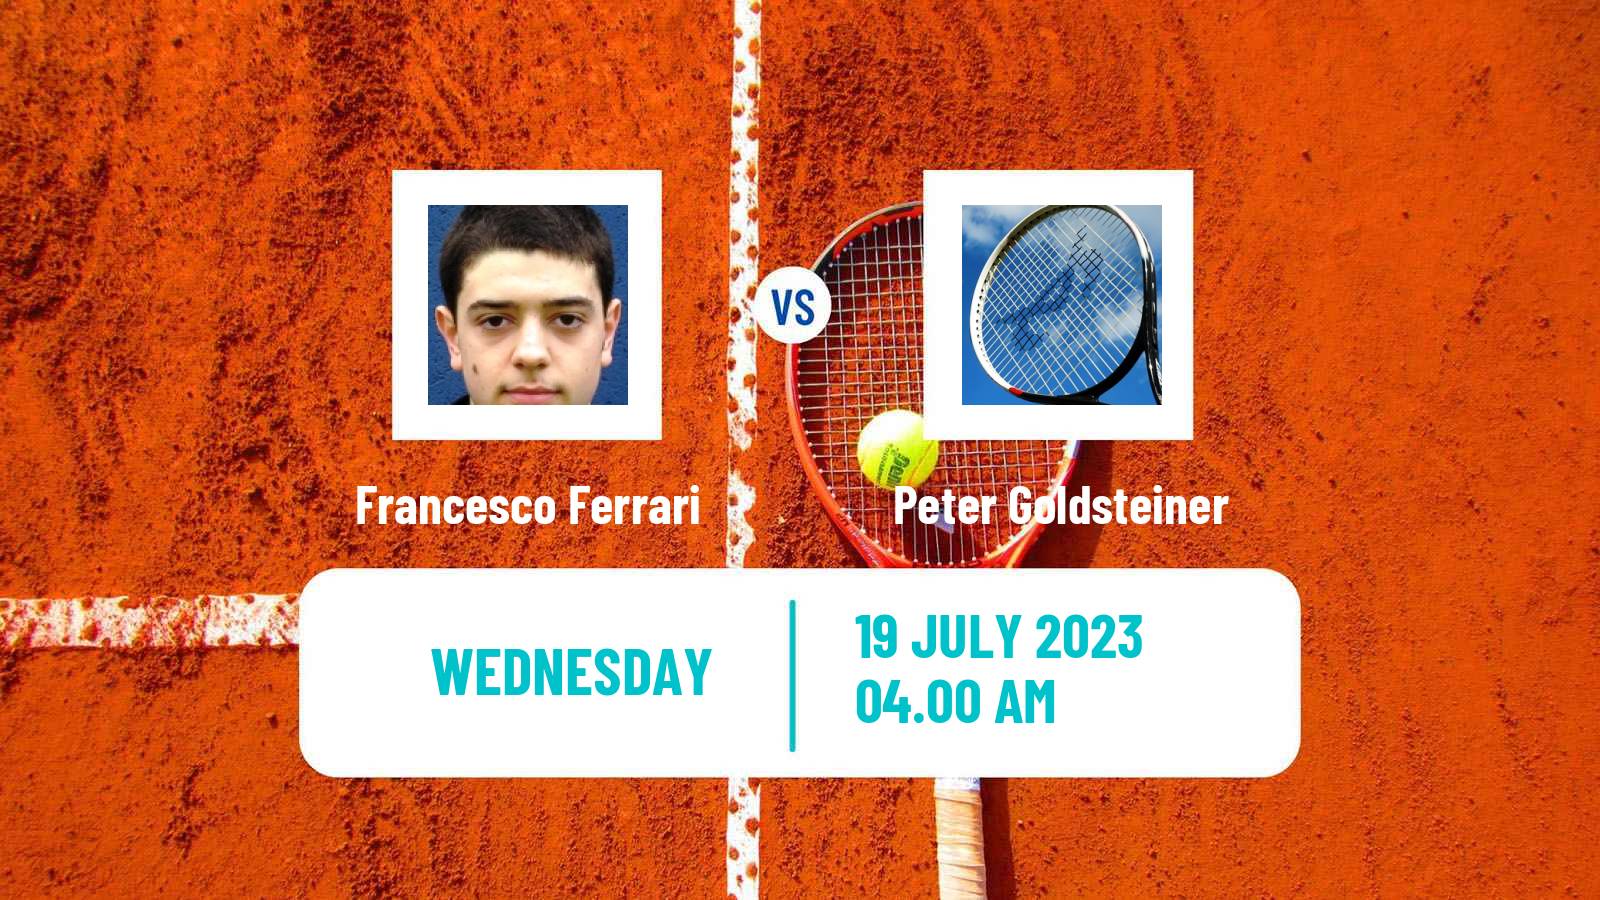 Tennis ITF M25 Telfs Men Francesco Ferrari - Peter Goldsteiner